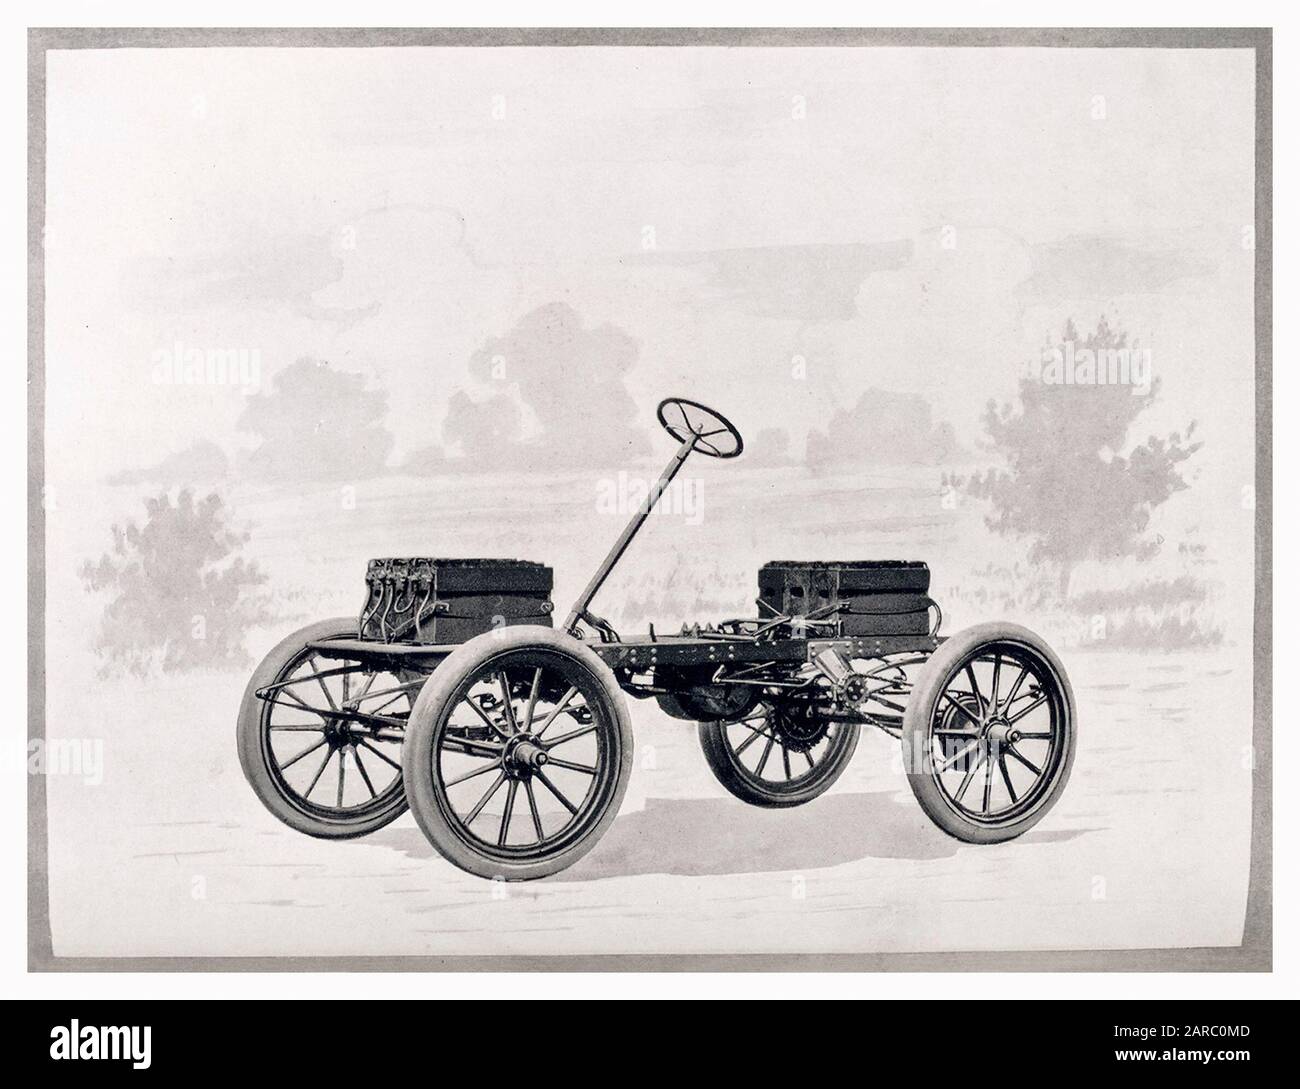 Voiture d'époque, véhicule électrique ancien (EV) montrant les batteries et le stockage de batterie sur le châssis, Babcock Electrics, illustration 1909 Banque D'Images